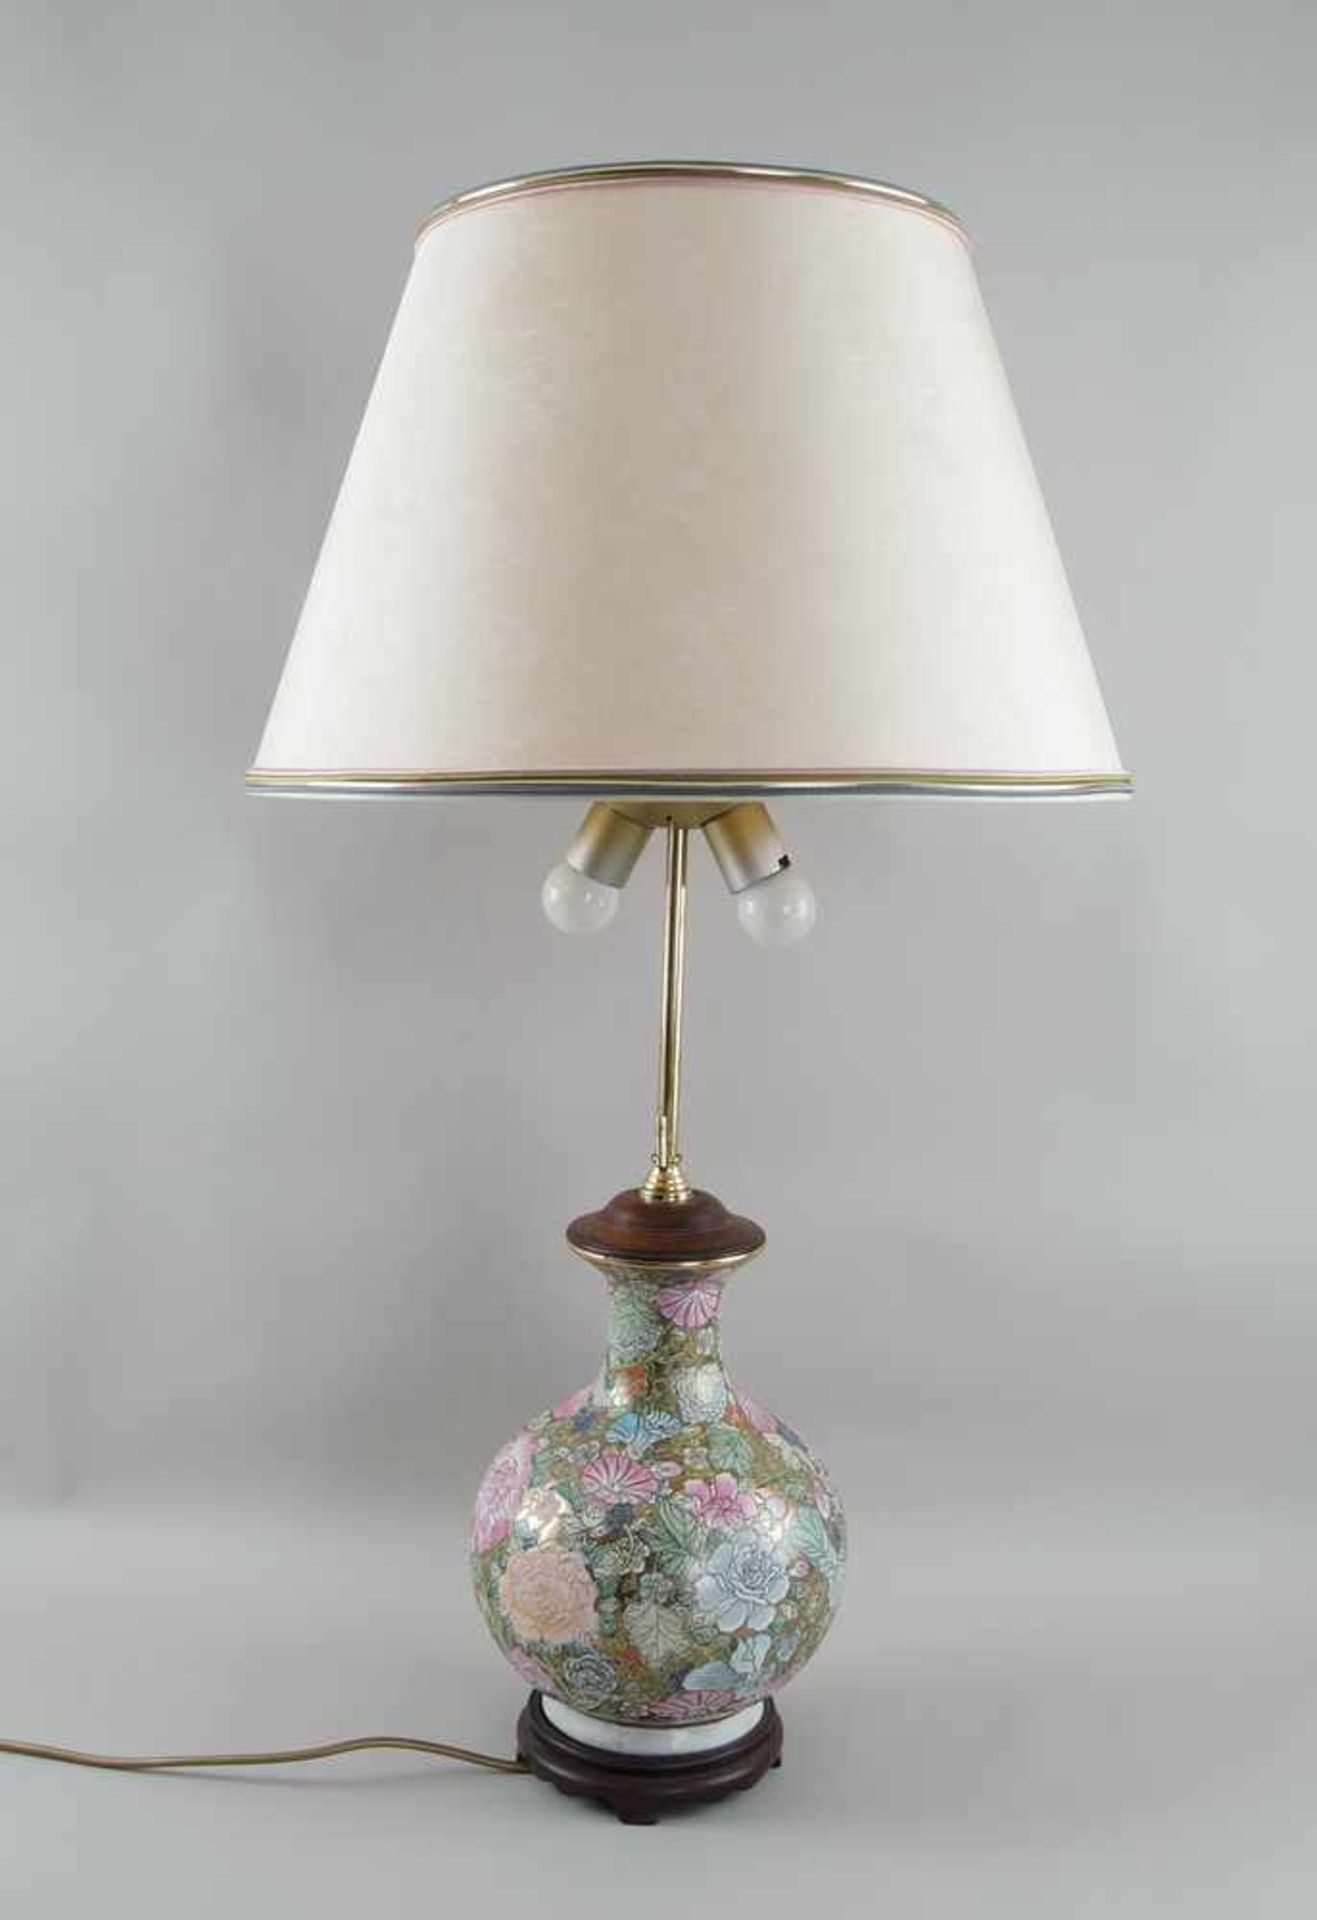 Tischlampe, ehem. asiatische Vase, auf Holzstand, elektrifiziert, mit Schirm, H 90 cm- - -24.00 %